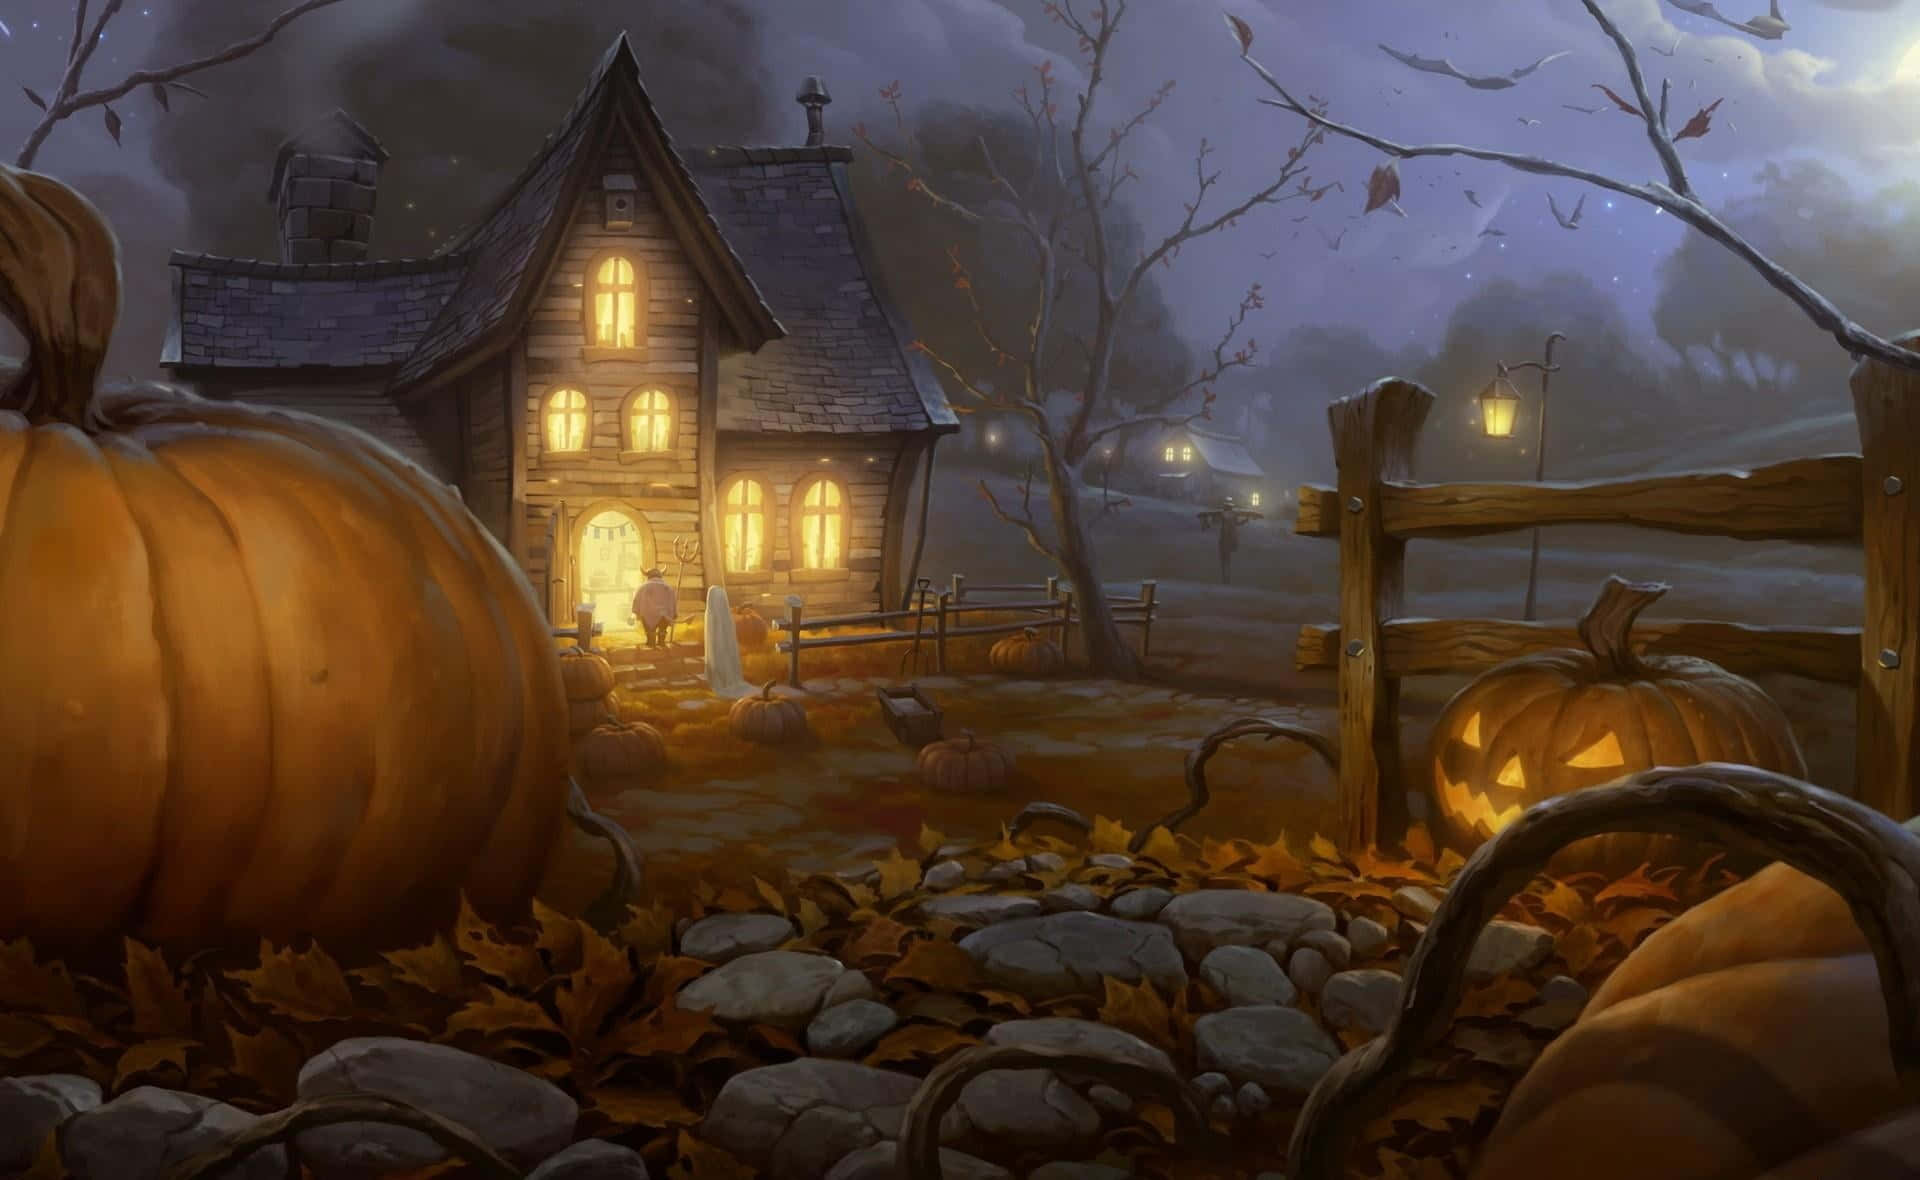 Imagenespeluznante De Una Casa Embrujada Con Calabazas Y Fantasmas De Halloween.